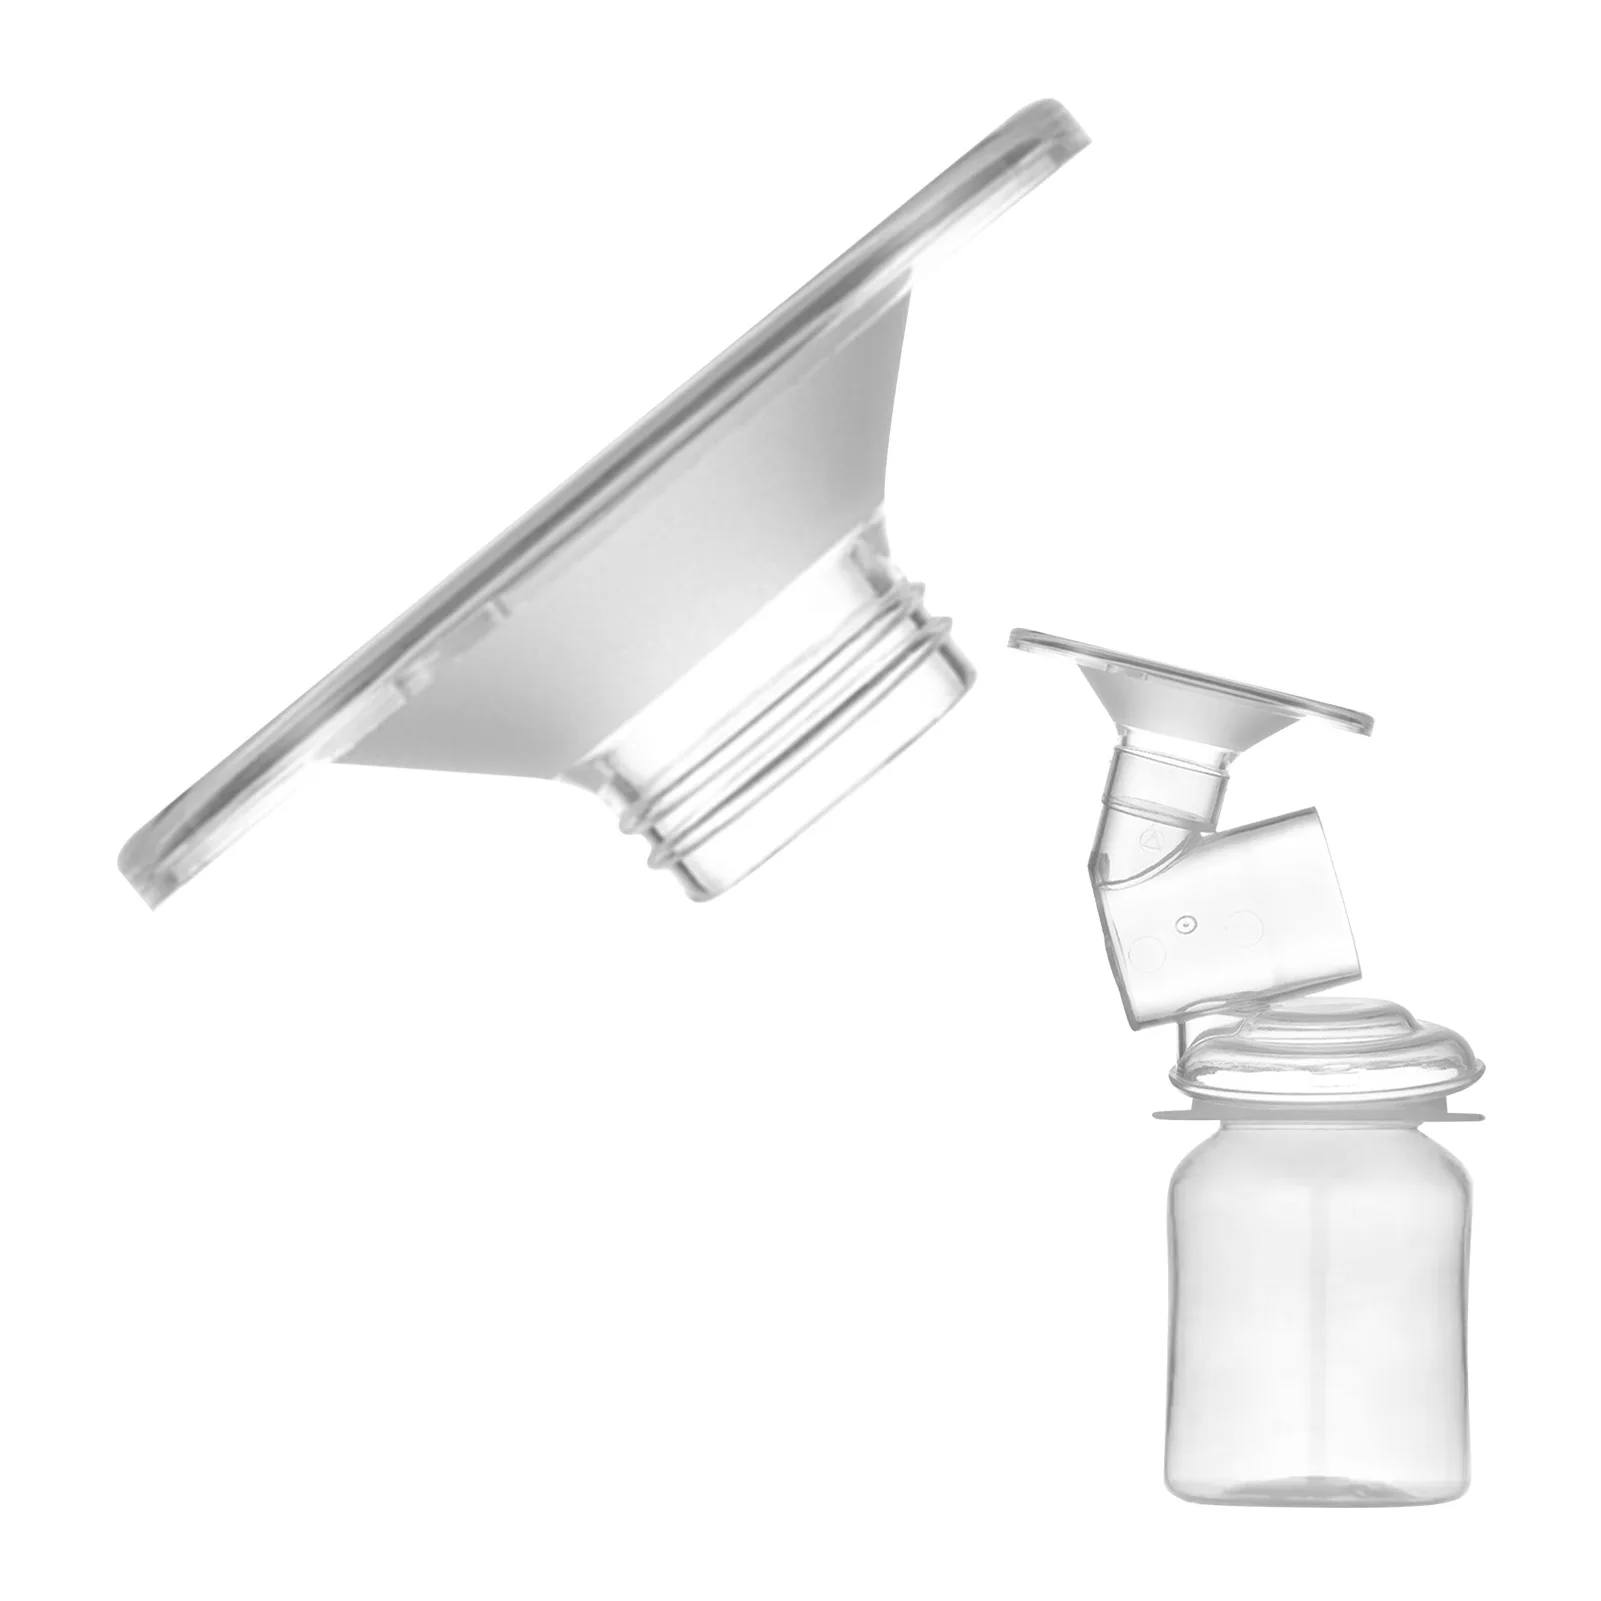 

Фланец-вставка Защитная крышка для соски 27/24 мм Калибр преобразователь размера молочная чашка Калибр адаптер рожок для соски гладкая крышк...